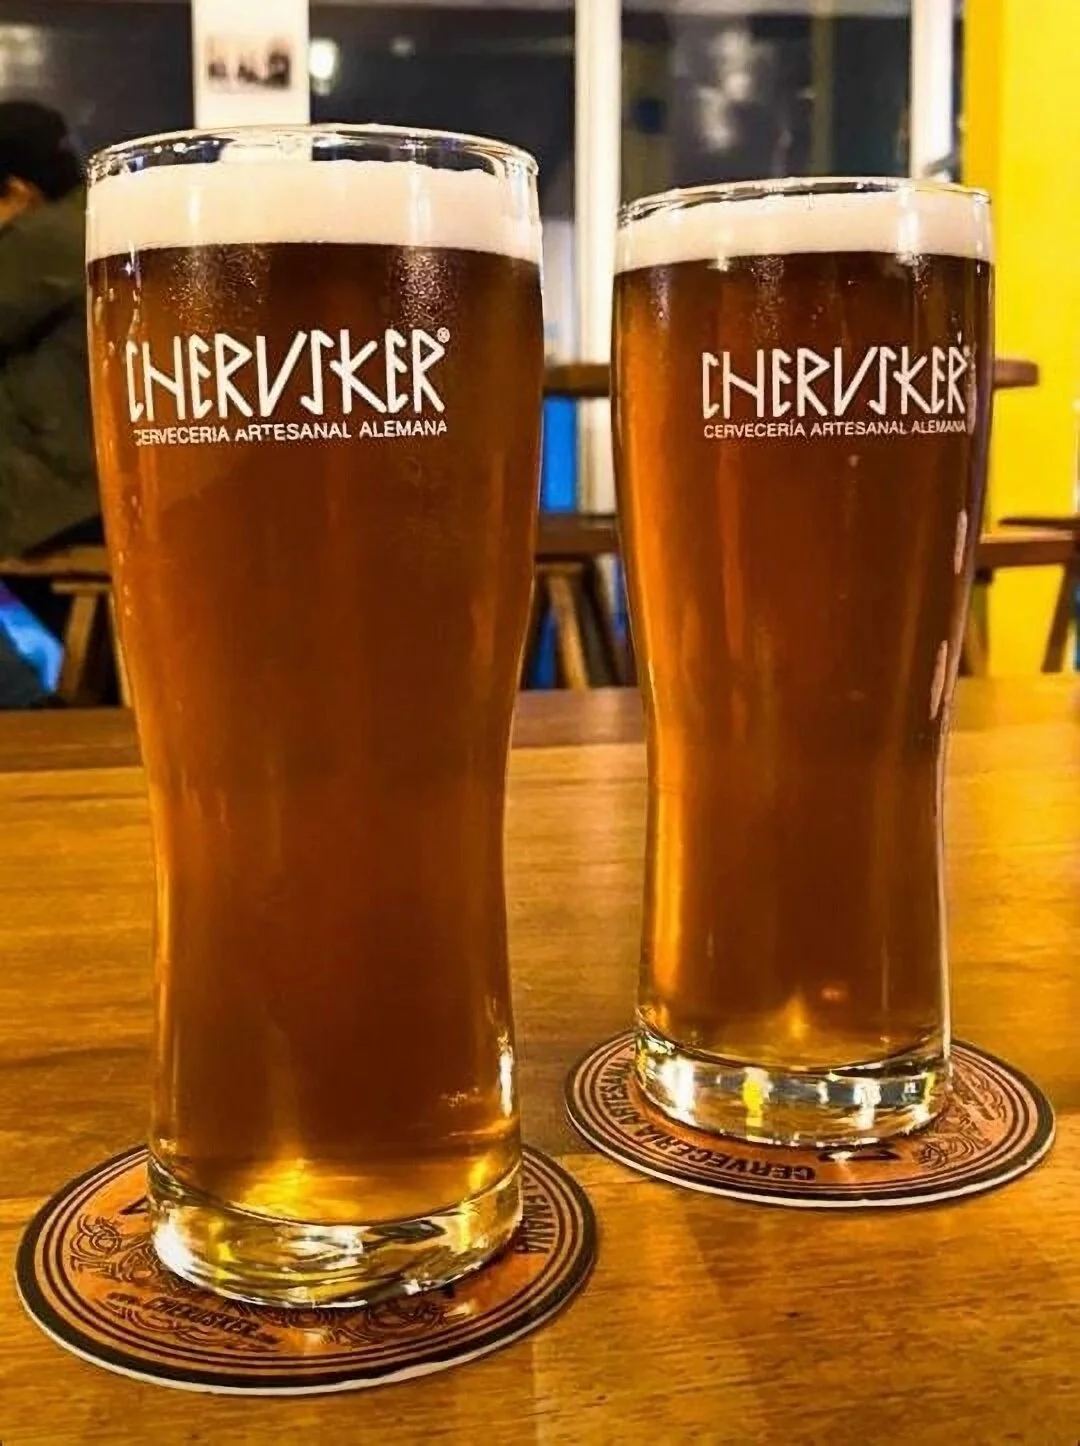 Restaurantes-cherusker-cerveceria-artesanal-alemana-17199